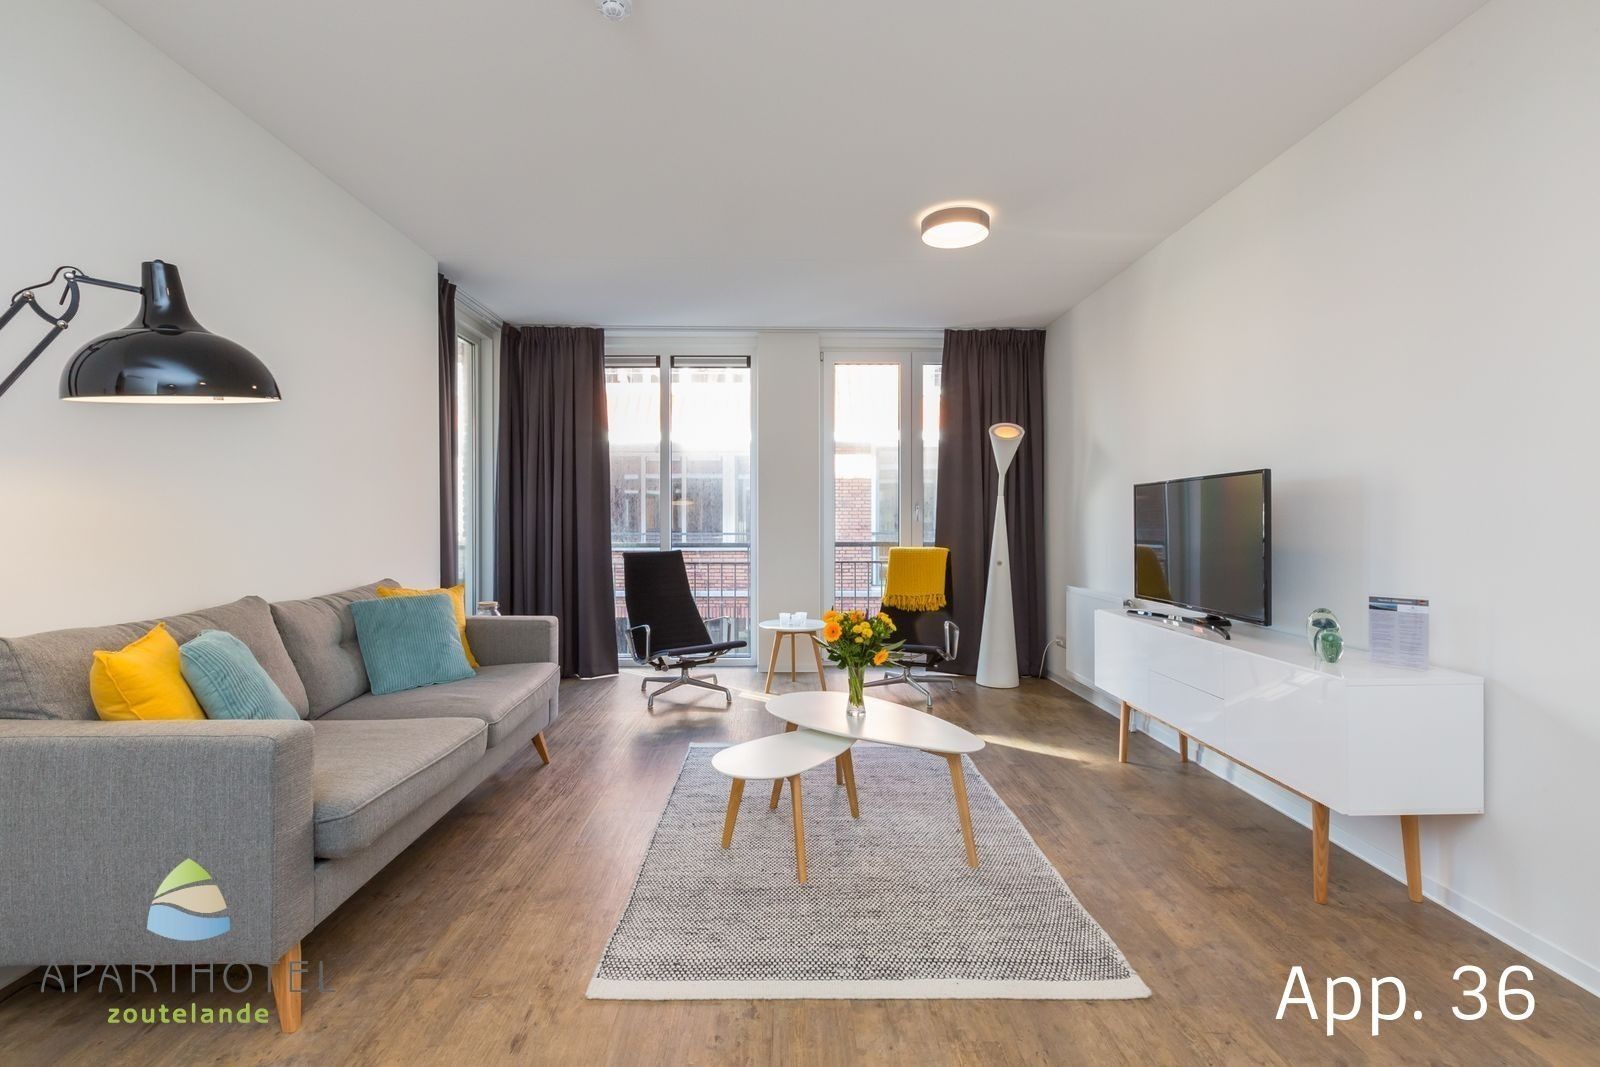 Luxe Comfort appartement | 3 personen | Huisdiervriendelijk Top Merken Winkel